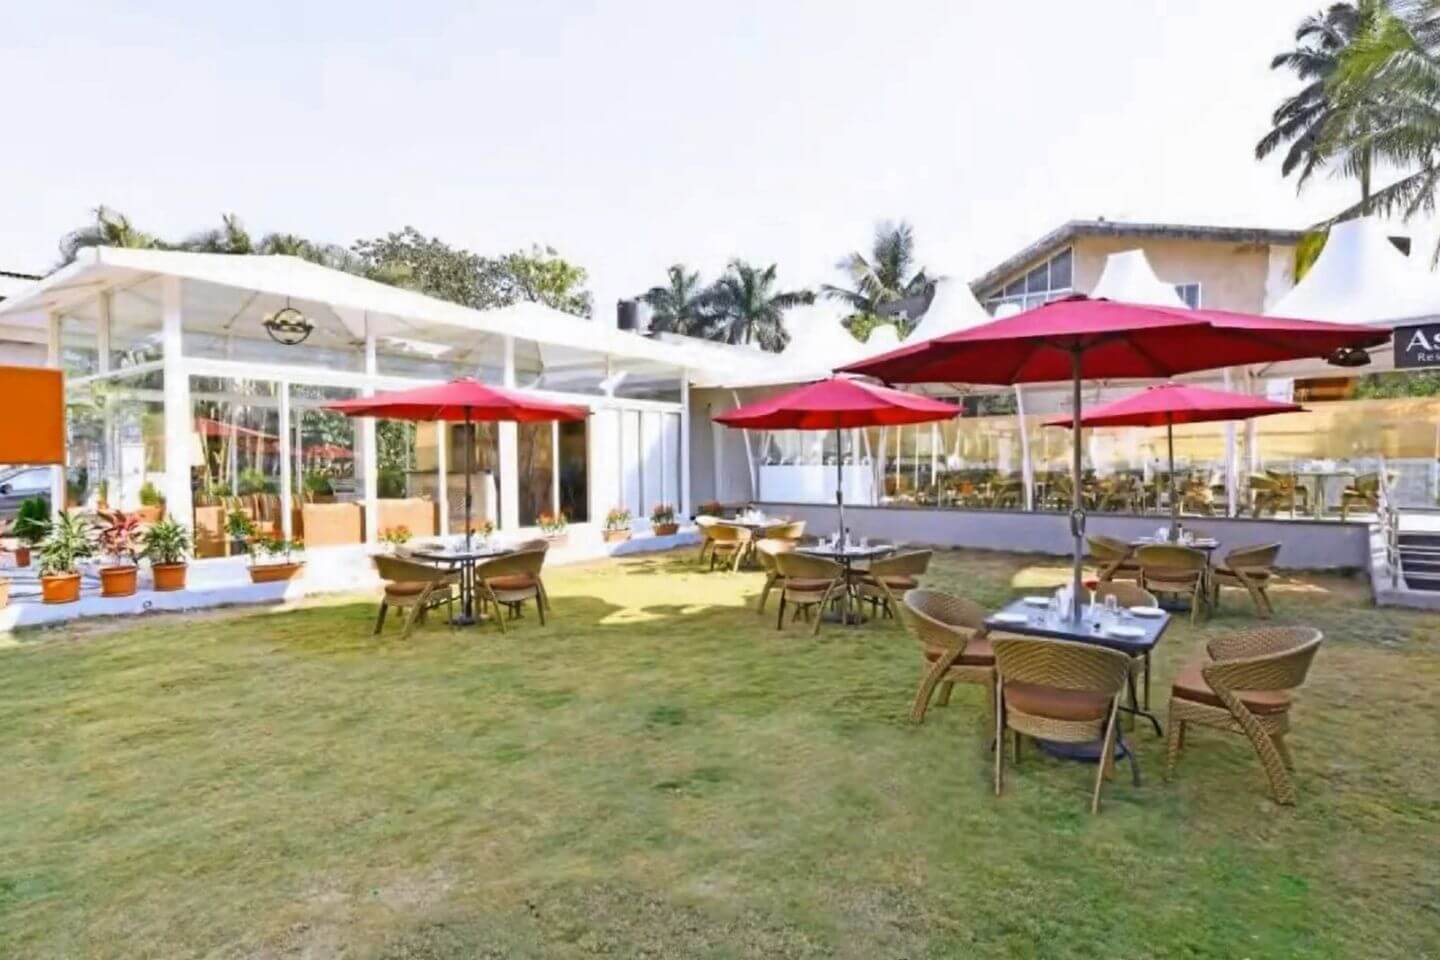 Meritas Countryside Resort, Resorts in Pune